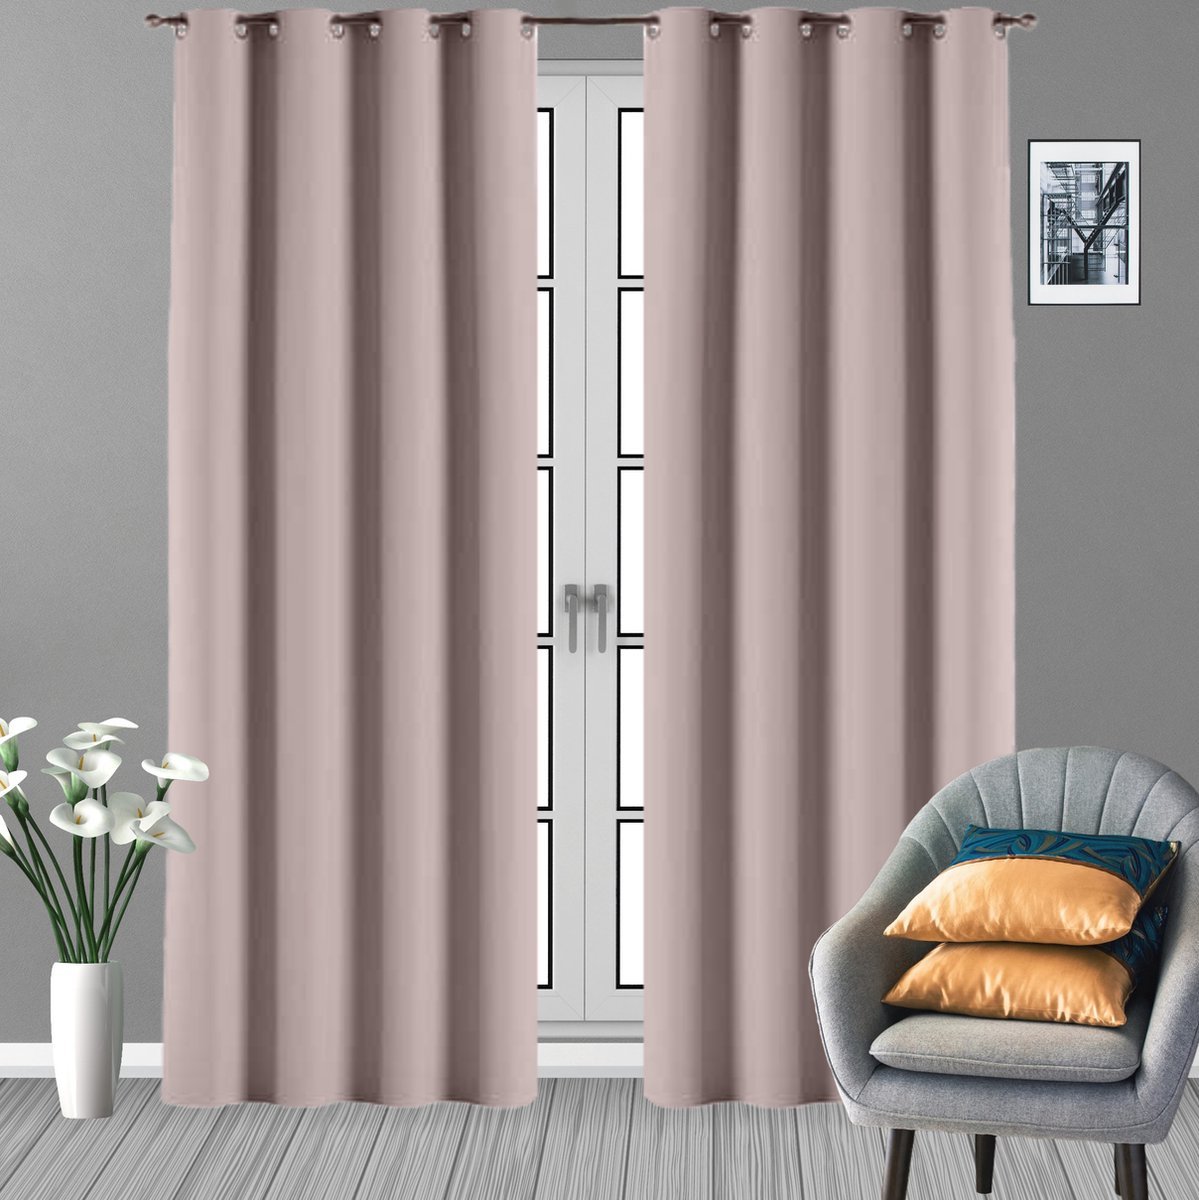 Glow Thuis - Verduisterende Gordijnen - kant en klaar -Roze Curtains- Met Ringen - 140 x 250 cm